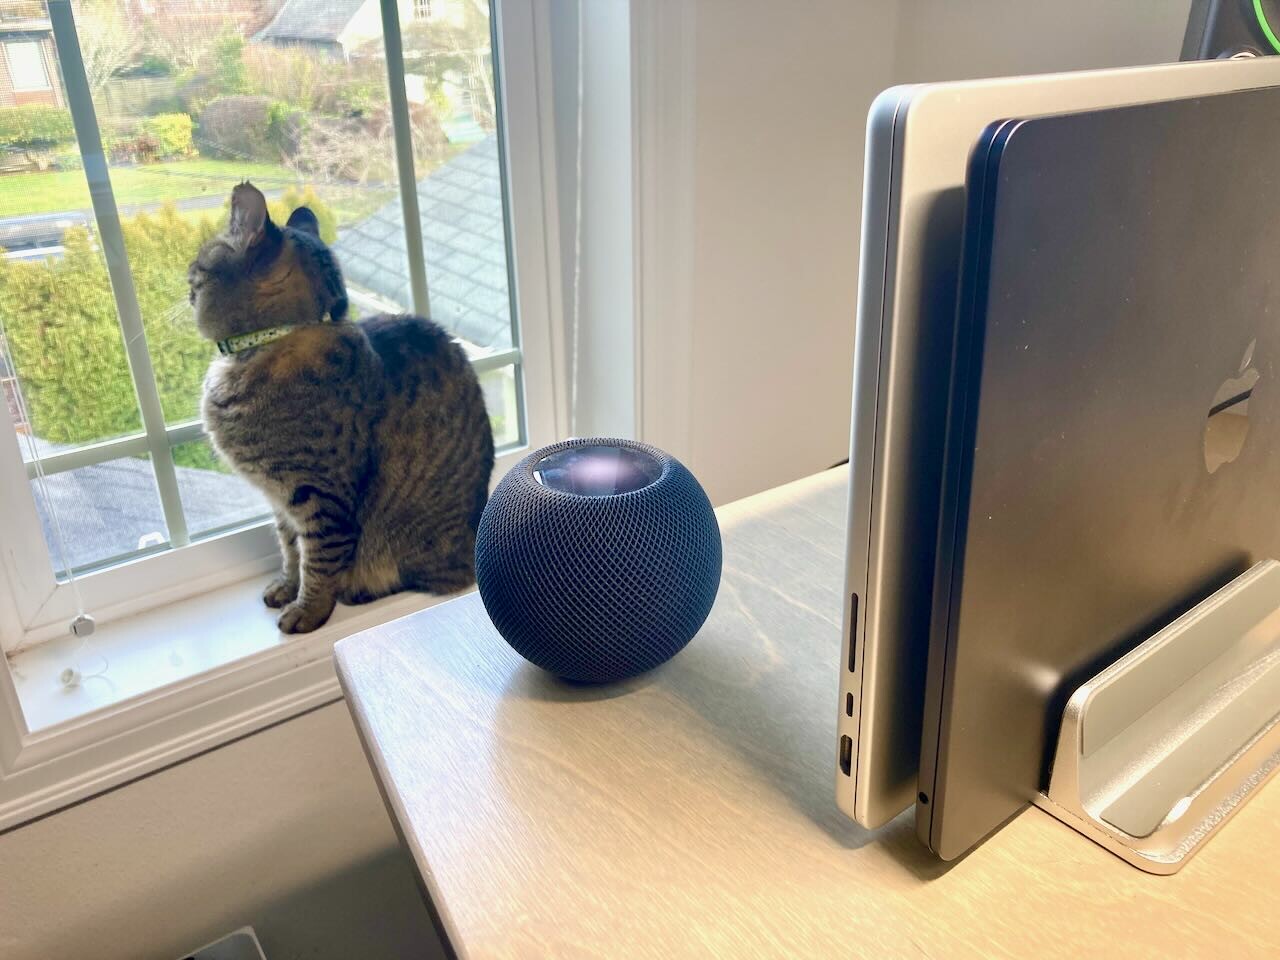 Cat sitting on a windowsill next to a homepod mini smart speaker.